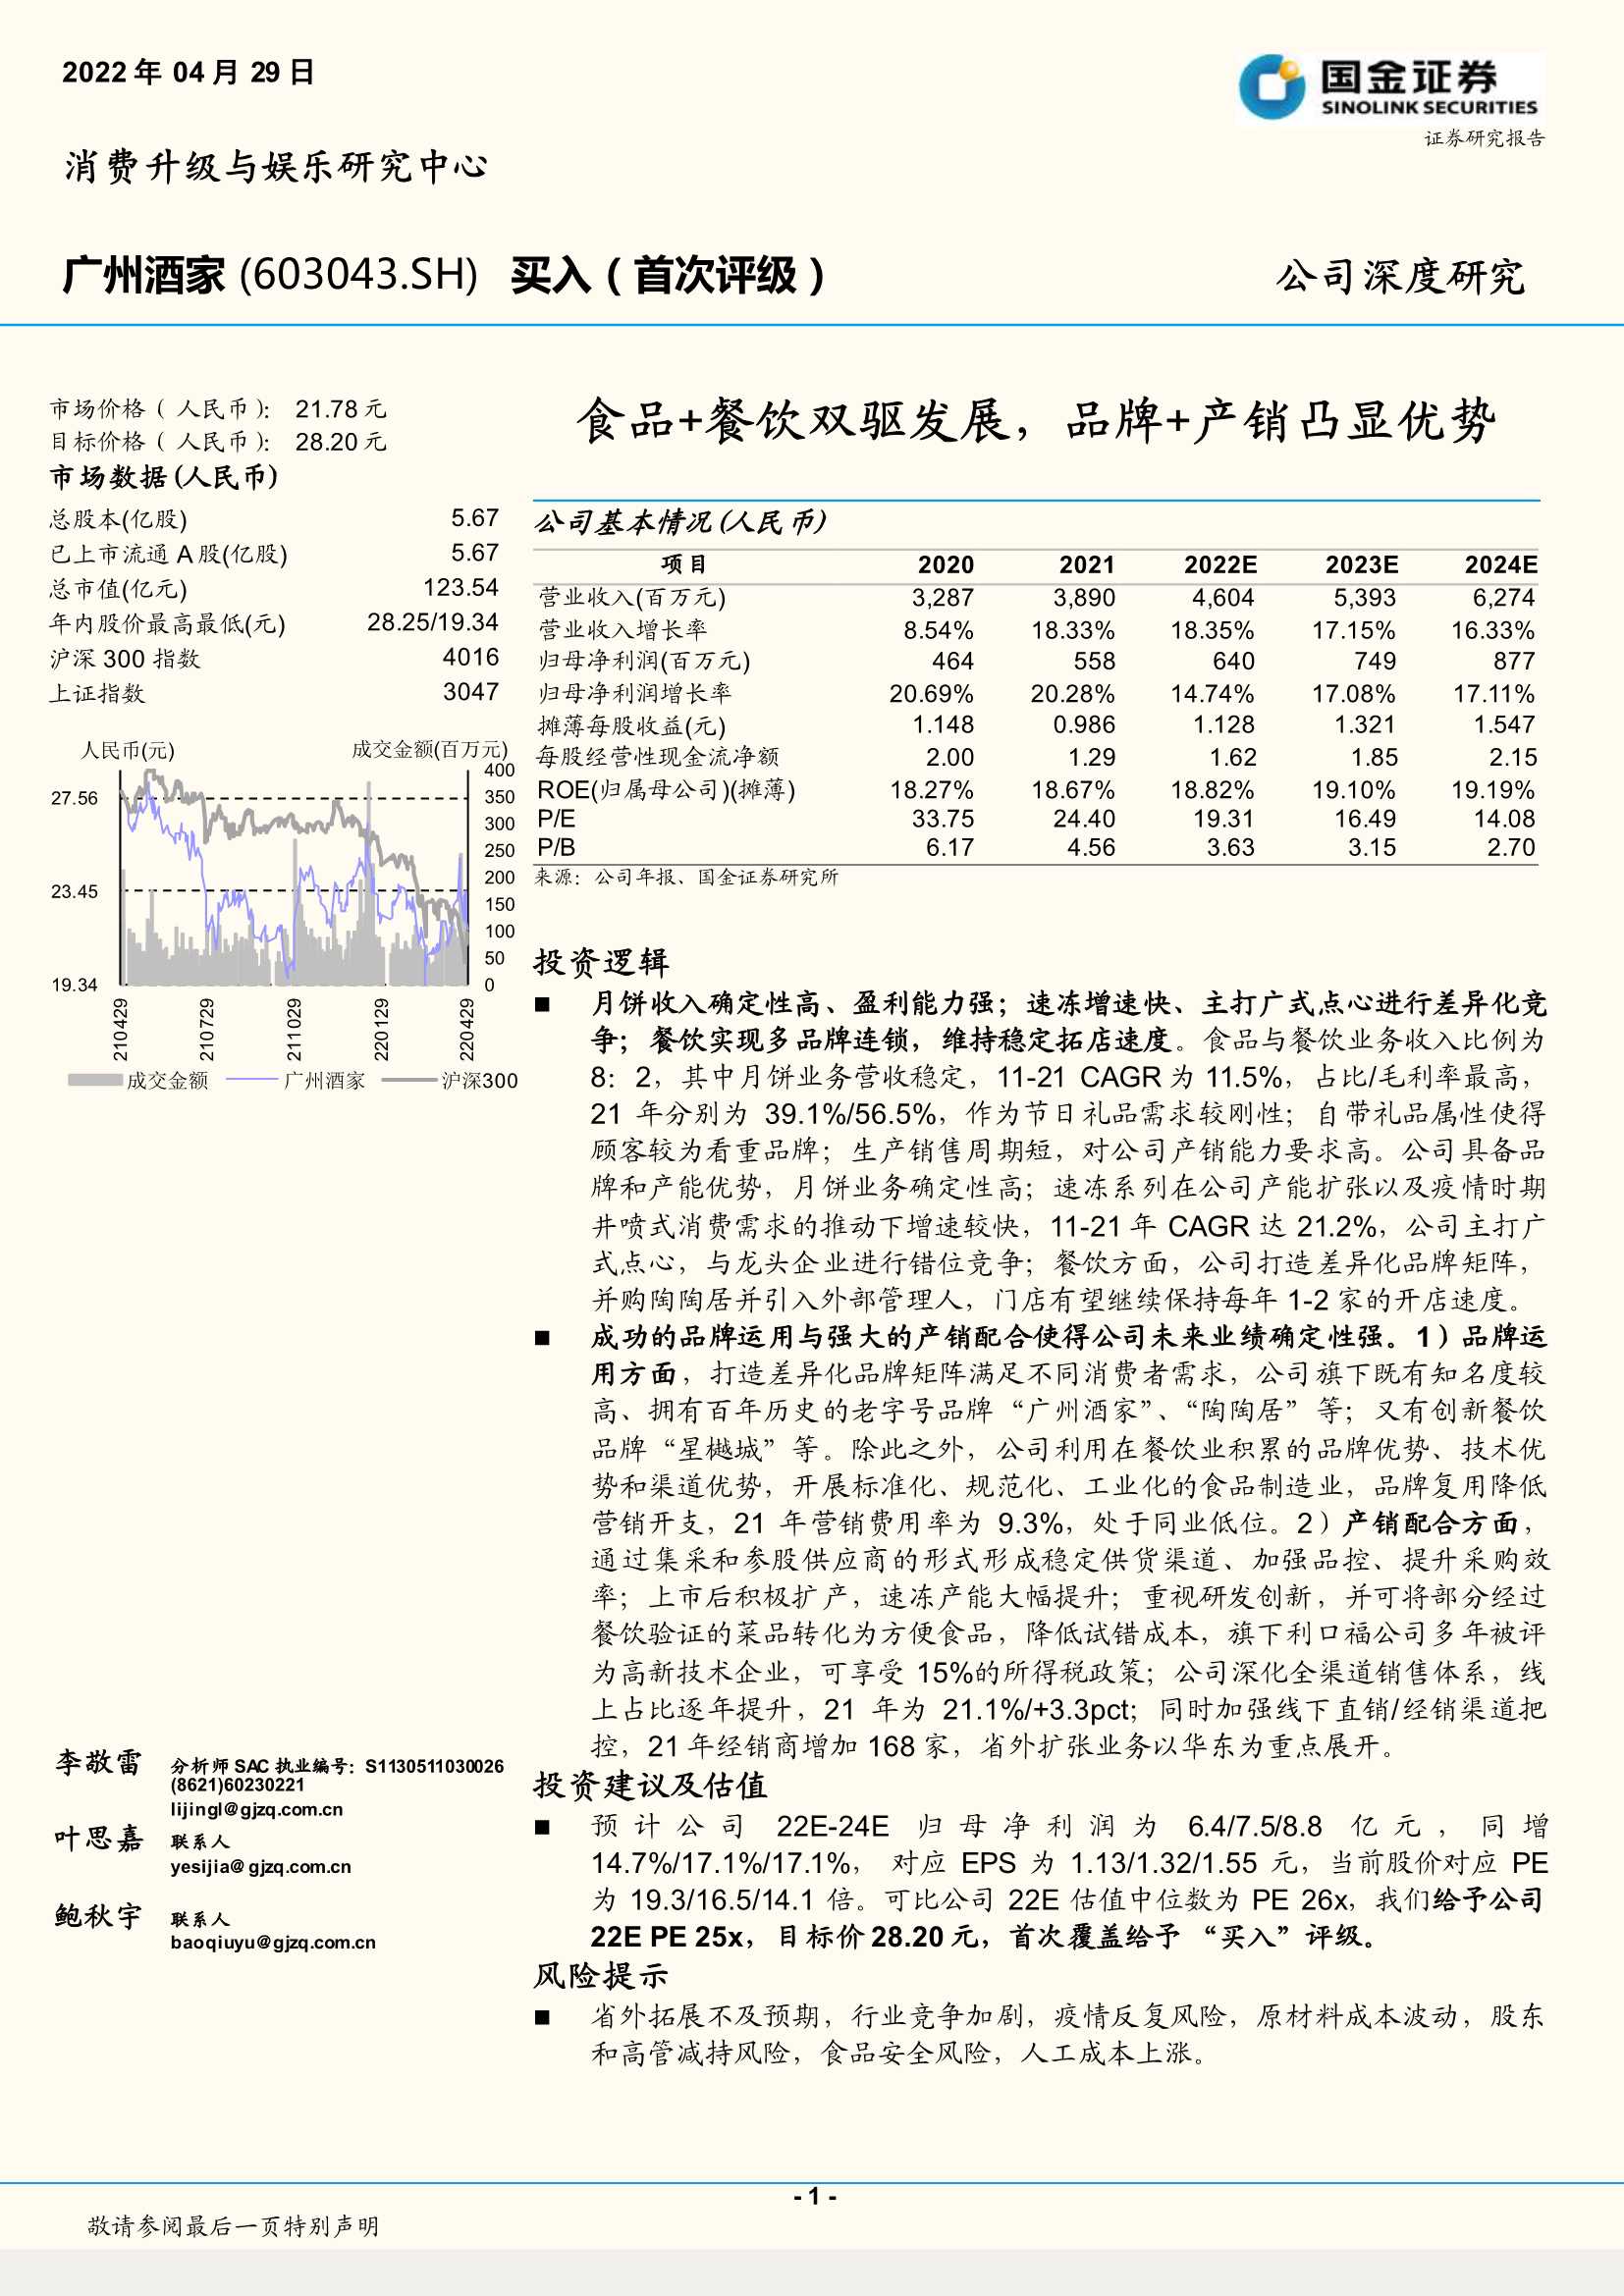 20220429-国金证券-广州酒家-603043-食品 餐饮双驱发展，品牌 产销凸显优势-30页